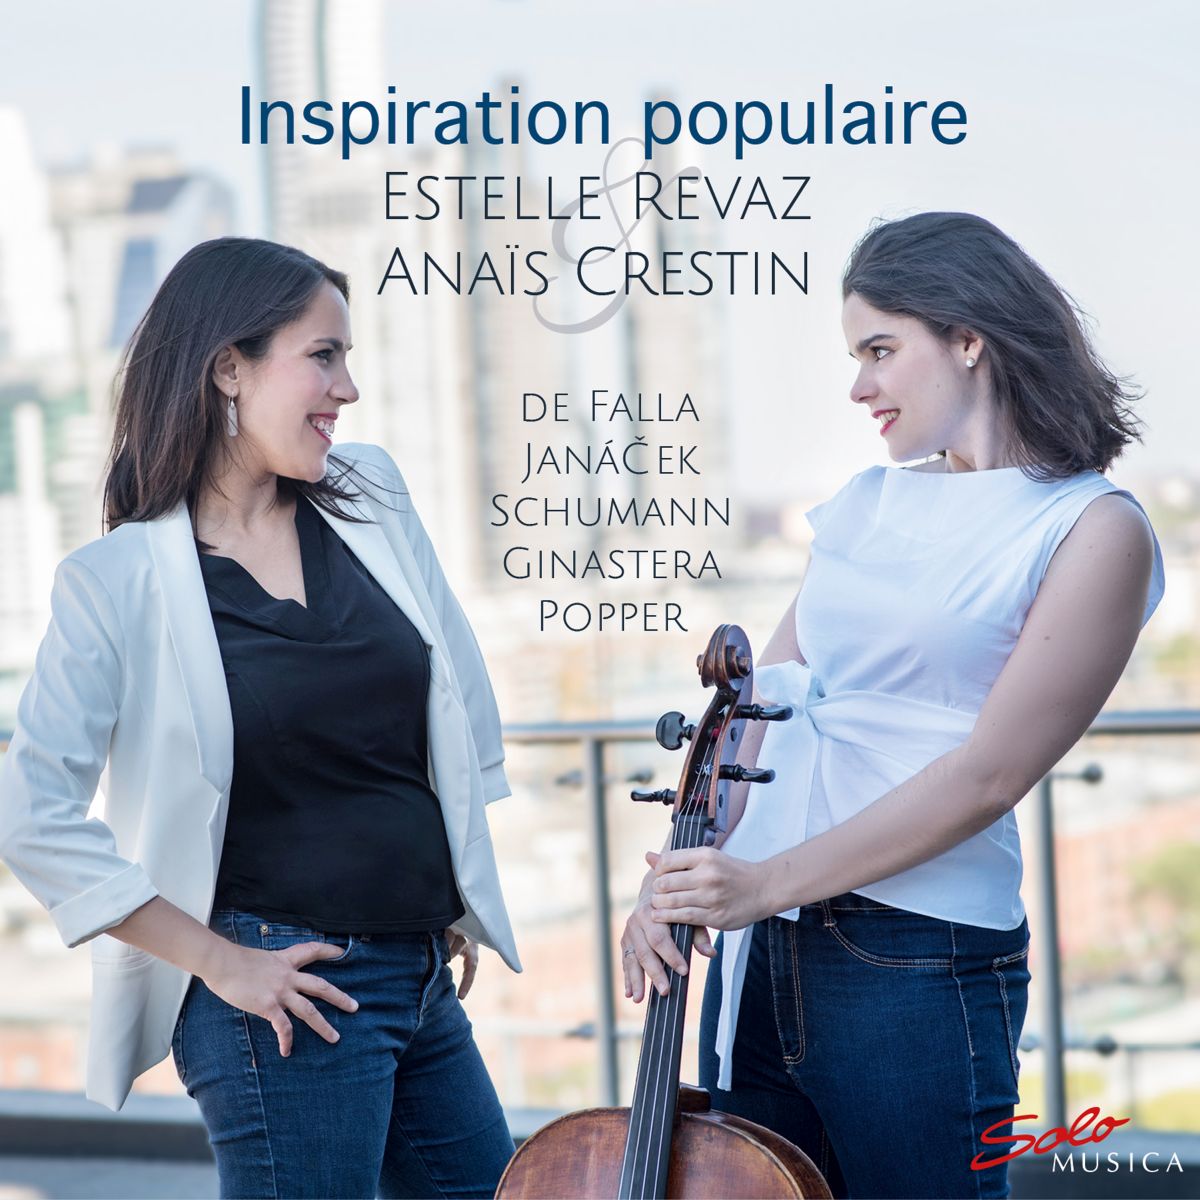 Estelle Revaz & Anaïs Crestin – Inspiration populaire